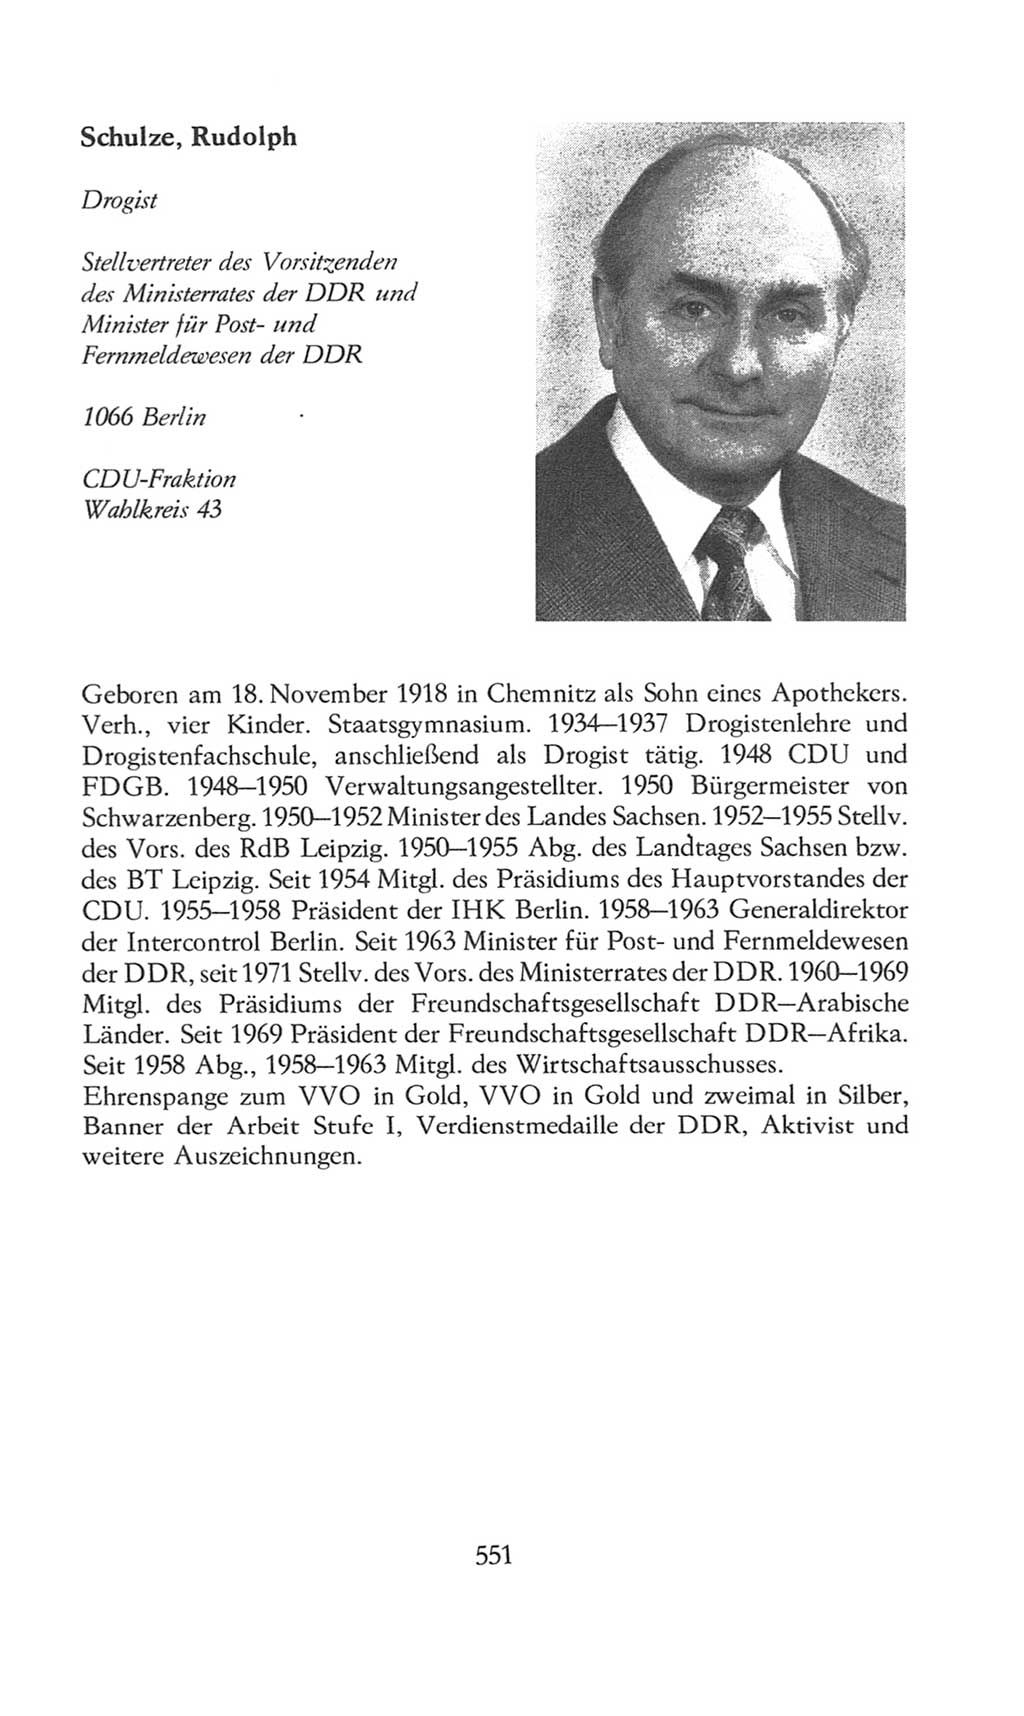 Volkskammer (VK) der Deutschen Demokratischen Republik (DDR), 8. Wahlperiode 1981-1986, Seite 551 (VK. DDR 8. WP. 1981-1986, S. 551)